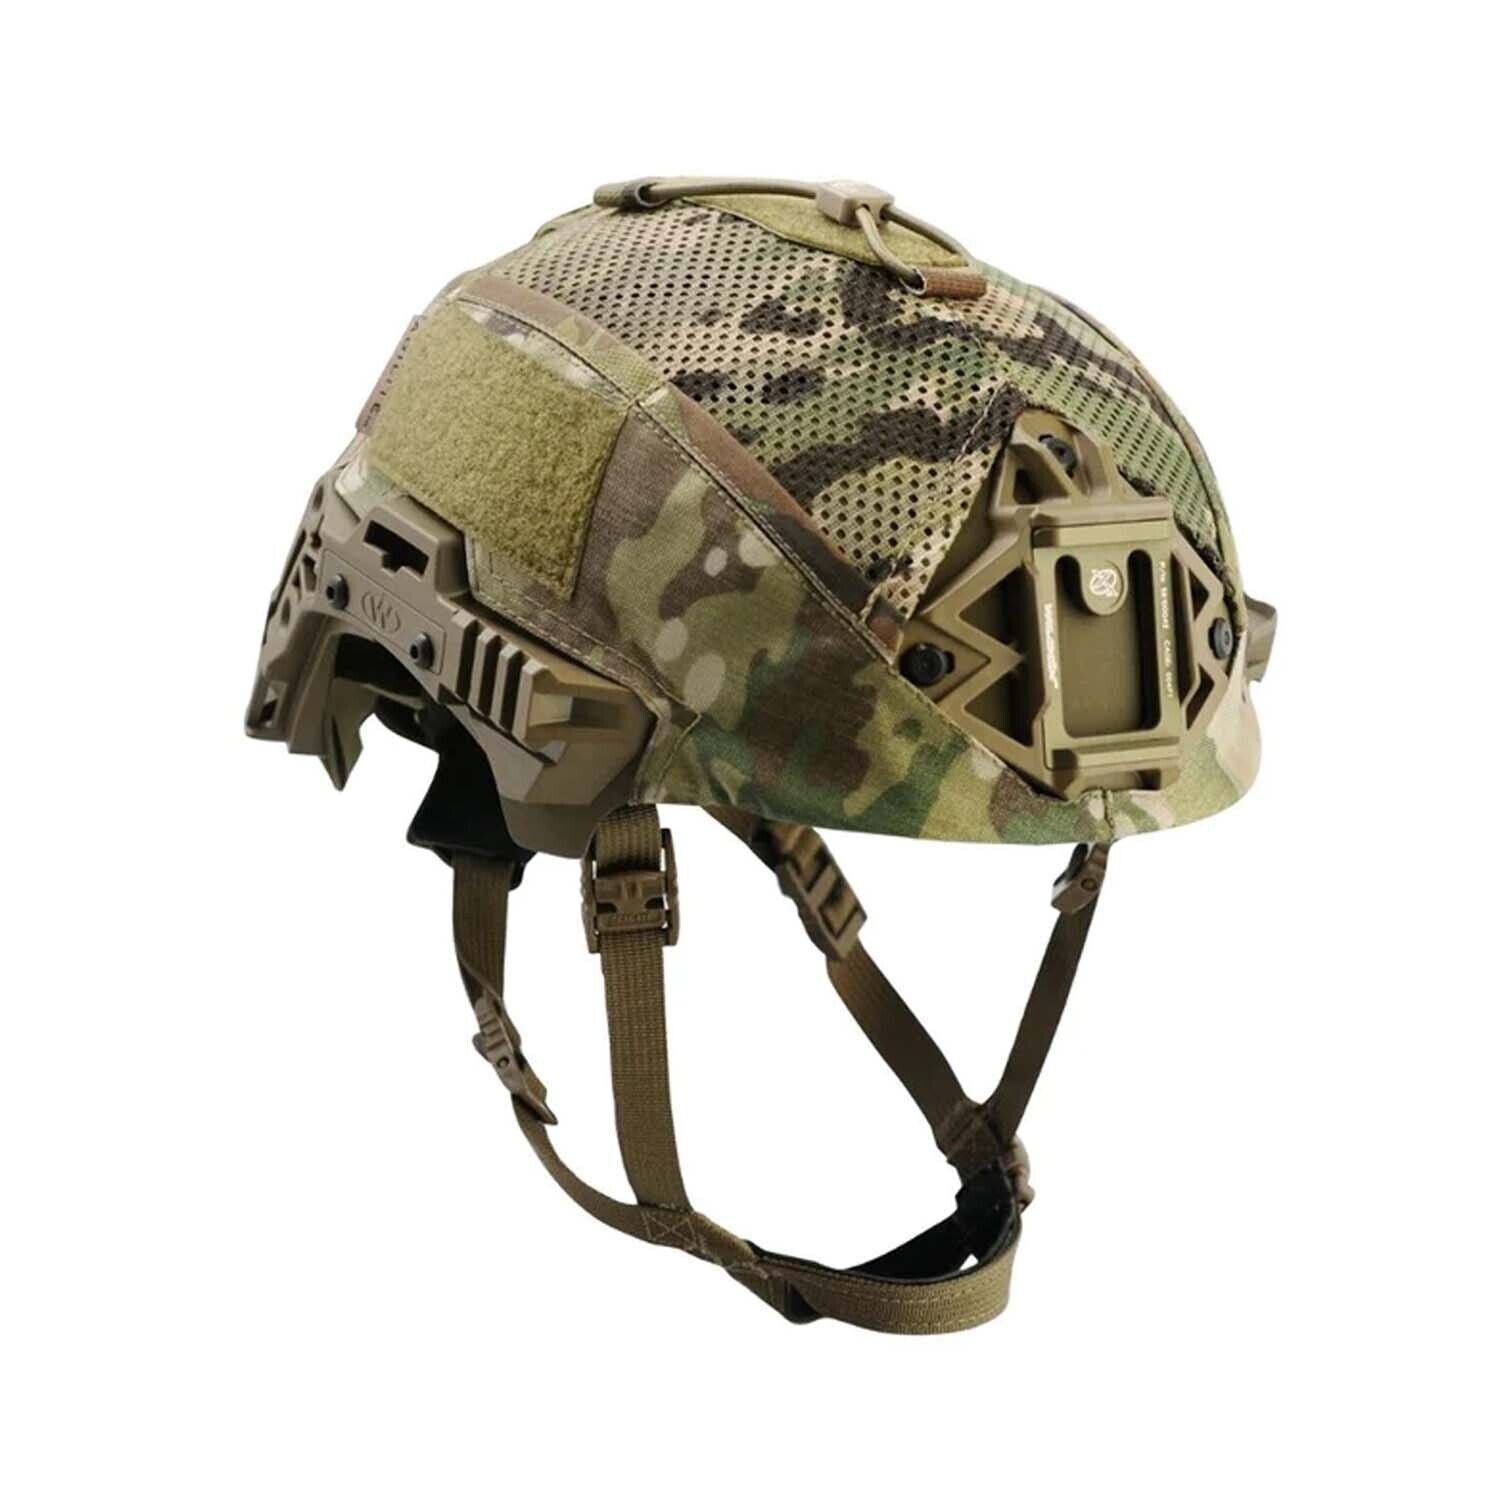 Agilite Helmet Cover Team Wendy EXFIL BUMP Carbon, multicam, size 2 Large/XL